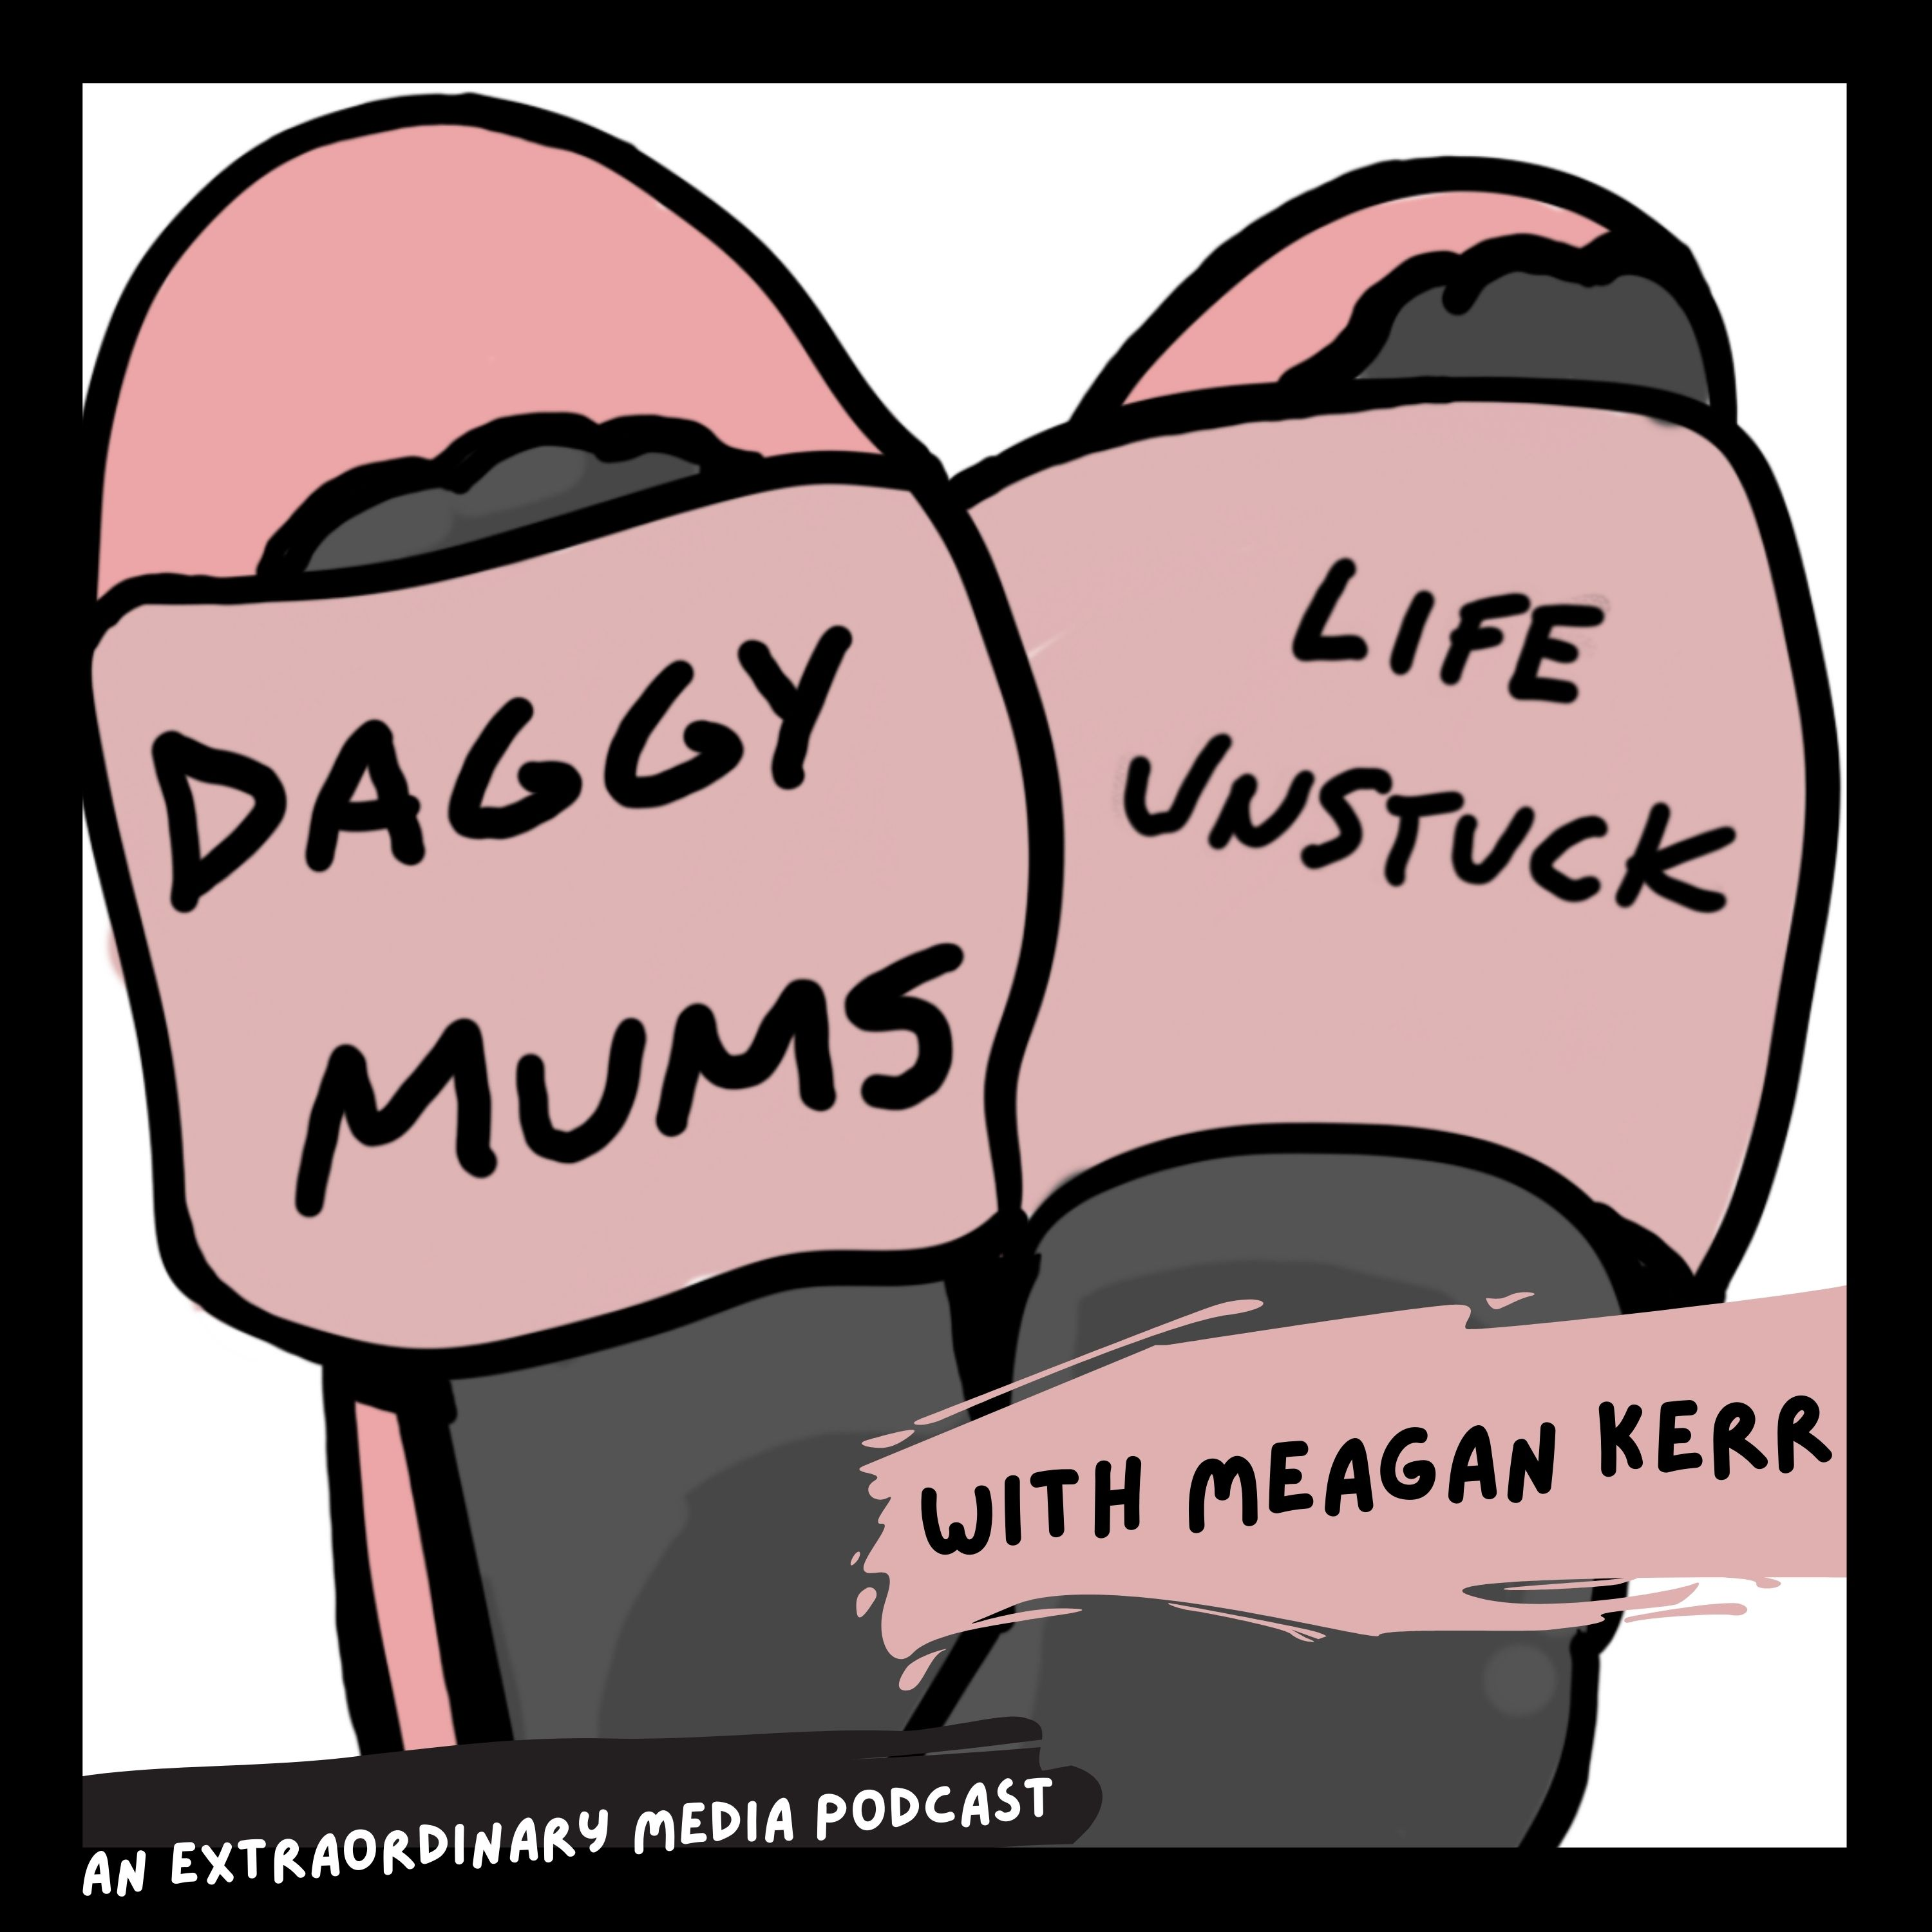 The Daggy Mum Trailer